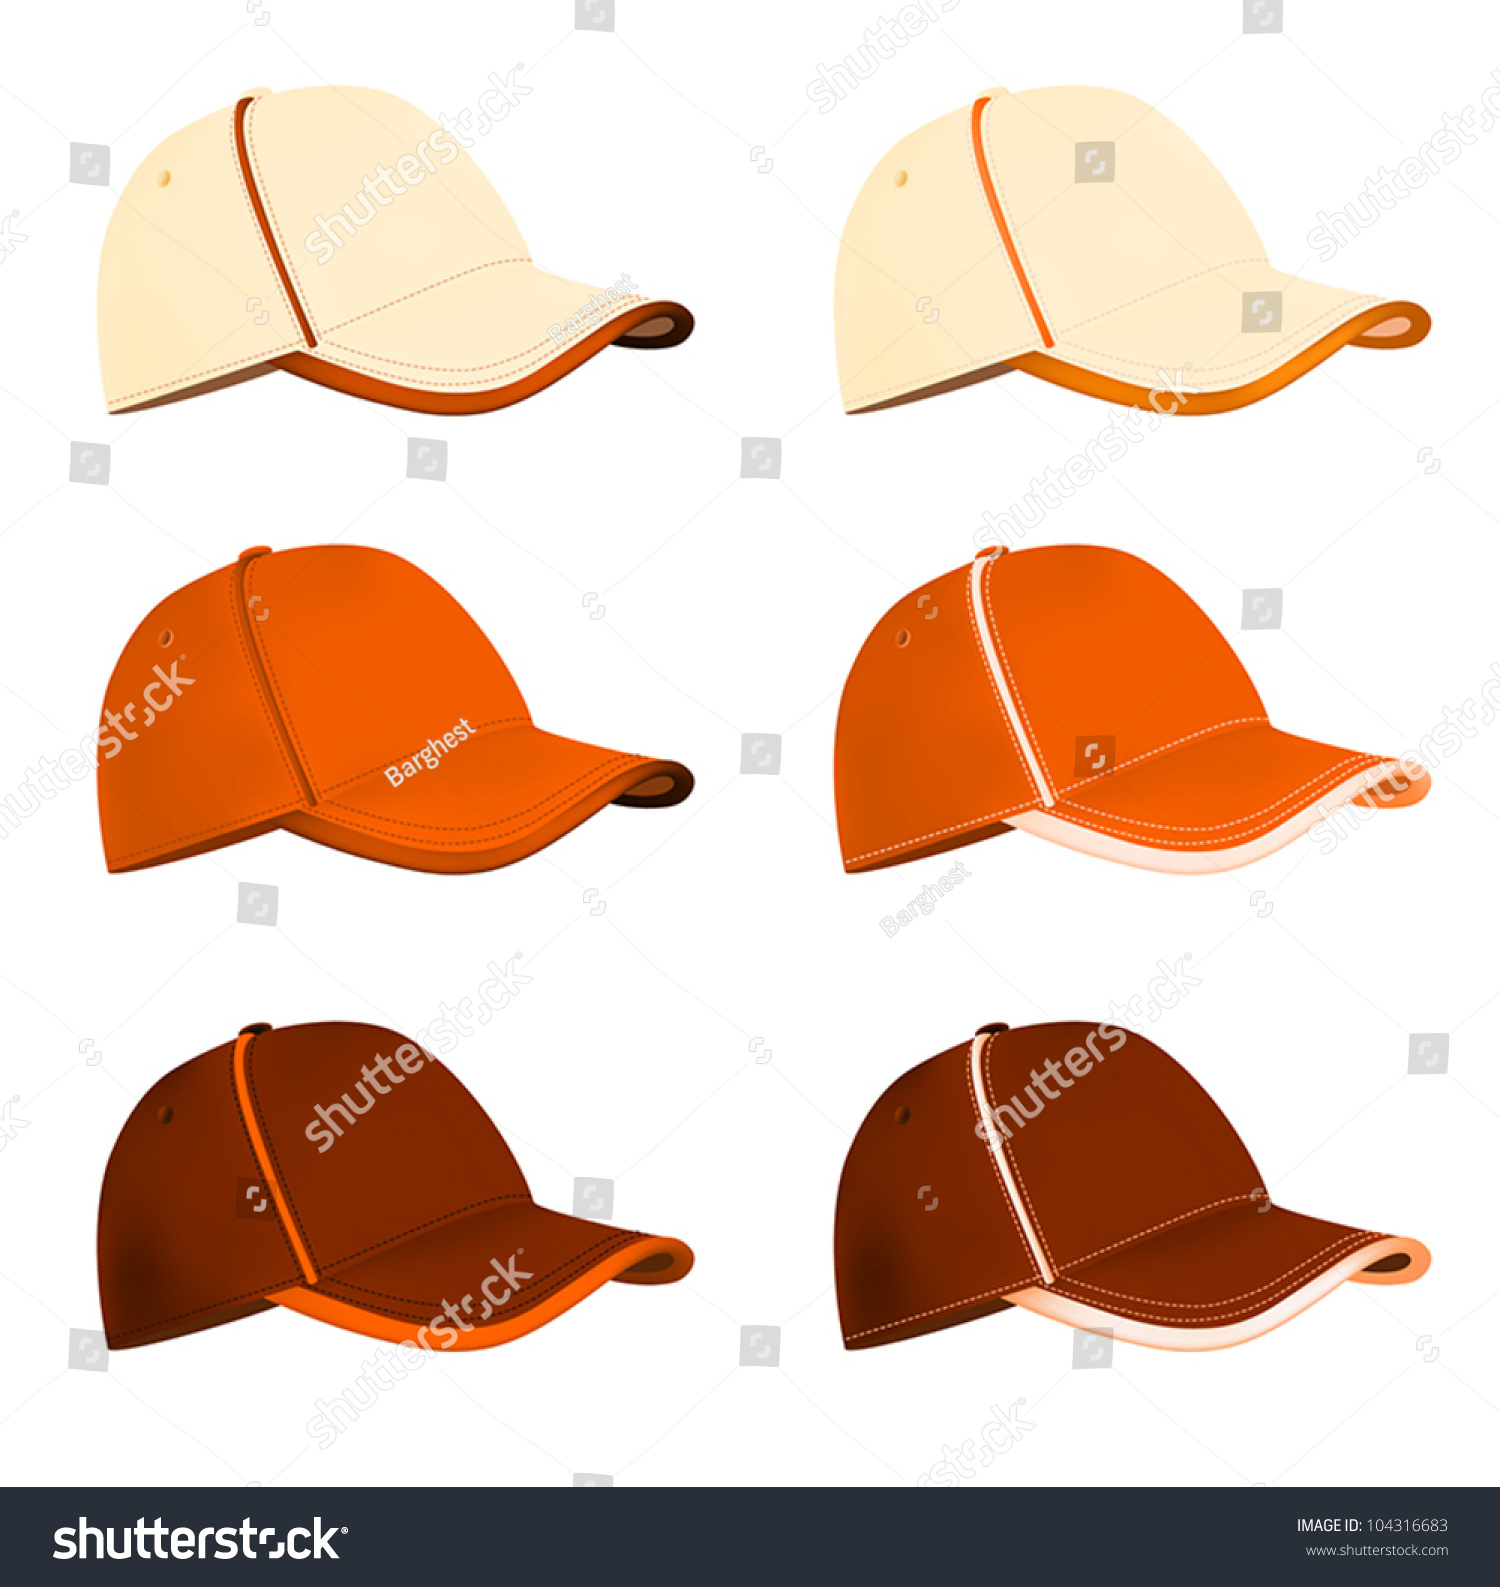 blank-baseball-hat-template-stock-vector-illustration-104316683-shutterstock